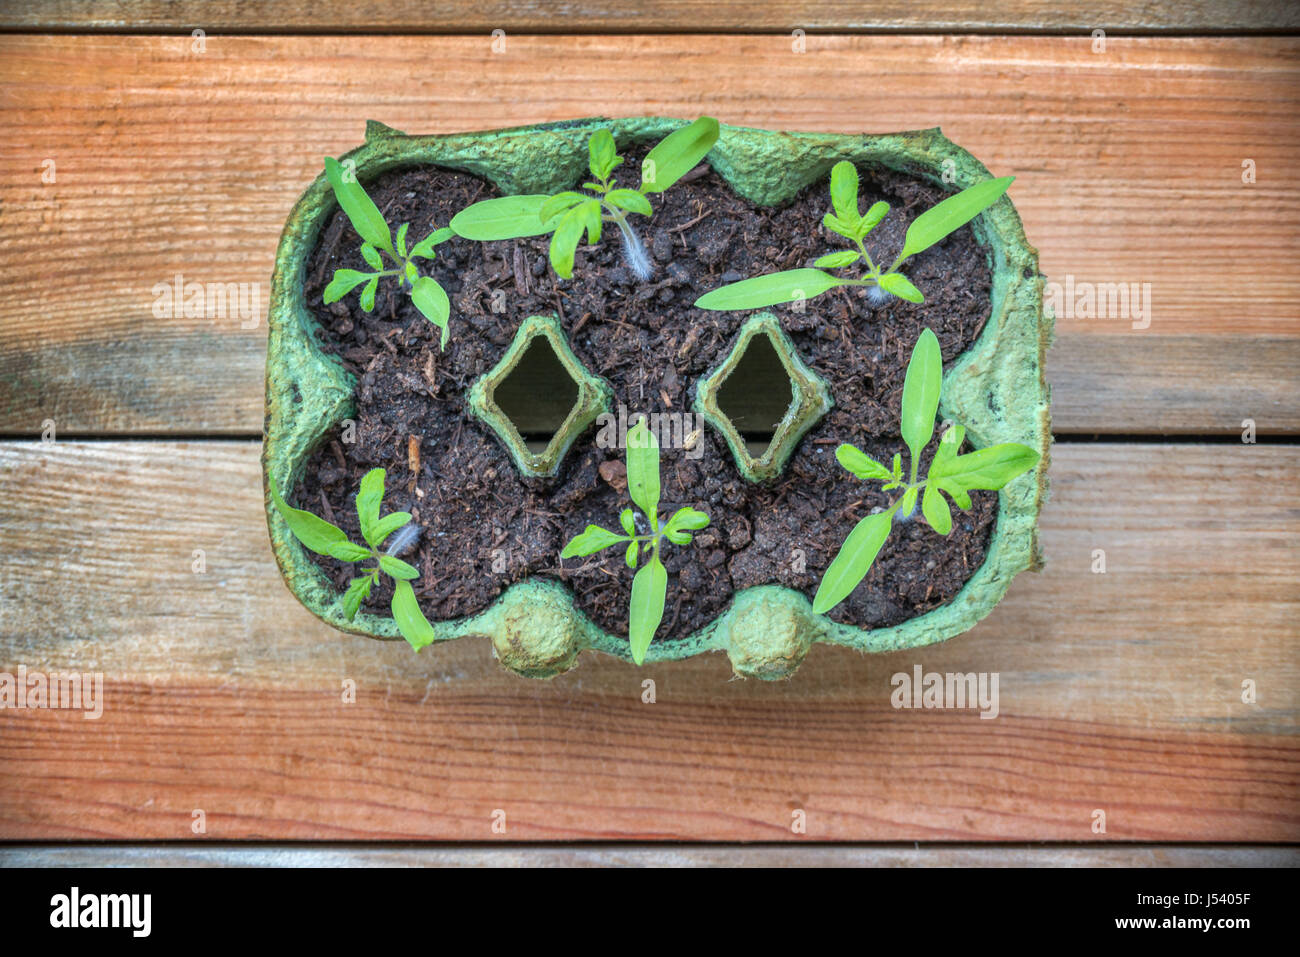 Vue de dessus de semis de tomate dans une boîte d'oeufs recyclé, fait maison et concept de jardinage Banque D'Images